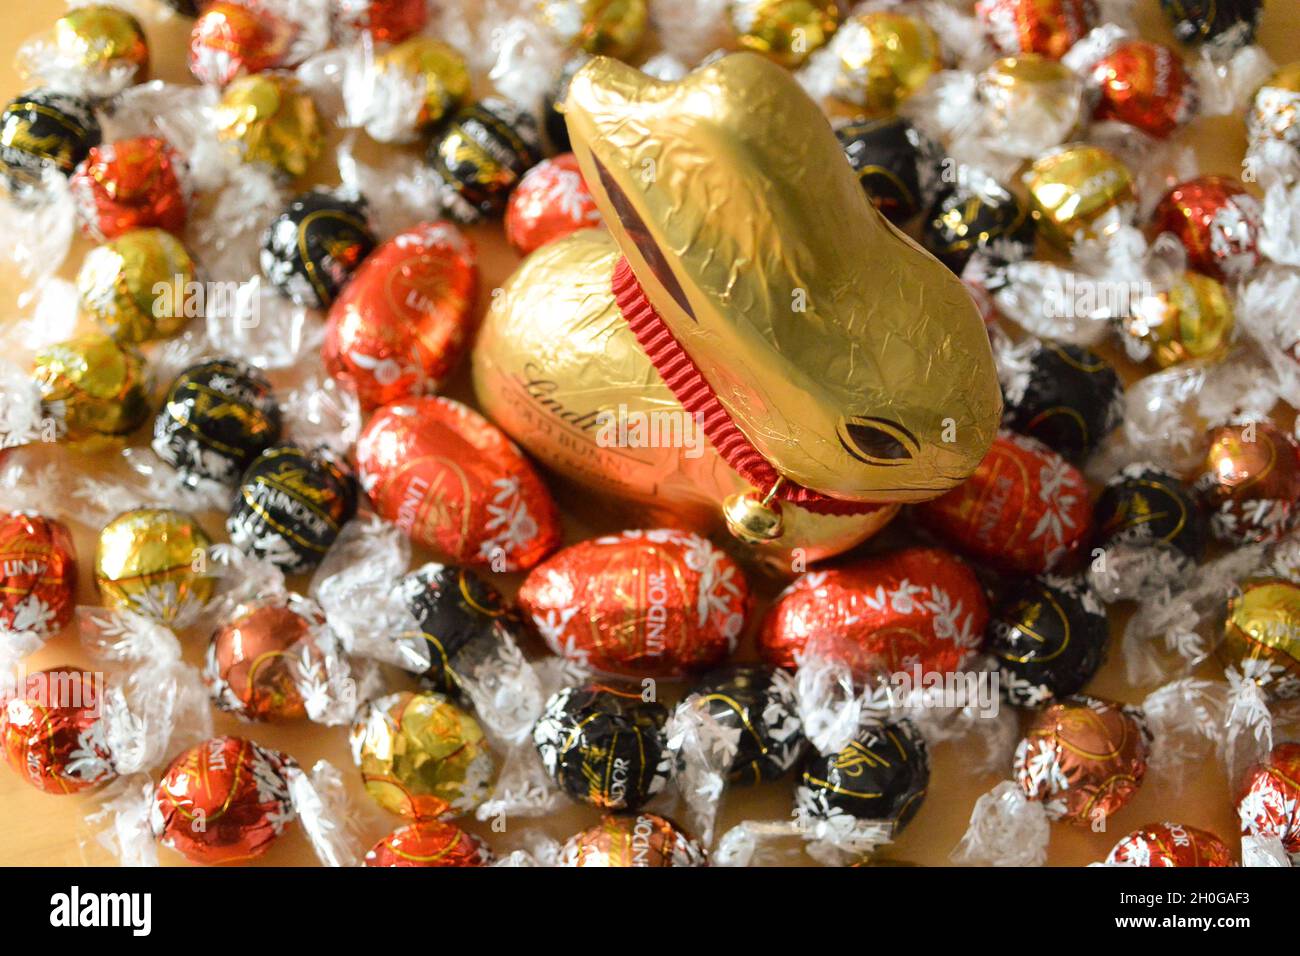 L'emblématique lapin au chocolat Lindt enveloppé d'une feuille d'or avec un collier et une cloche rouges distinctifs, entouré d'œufs de Pâques au chocolat et de balles de Lindor Banque D'Images